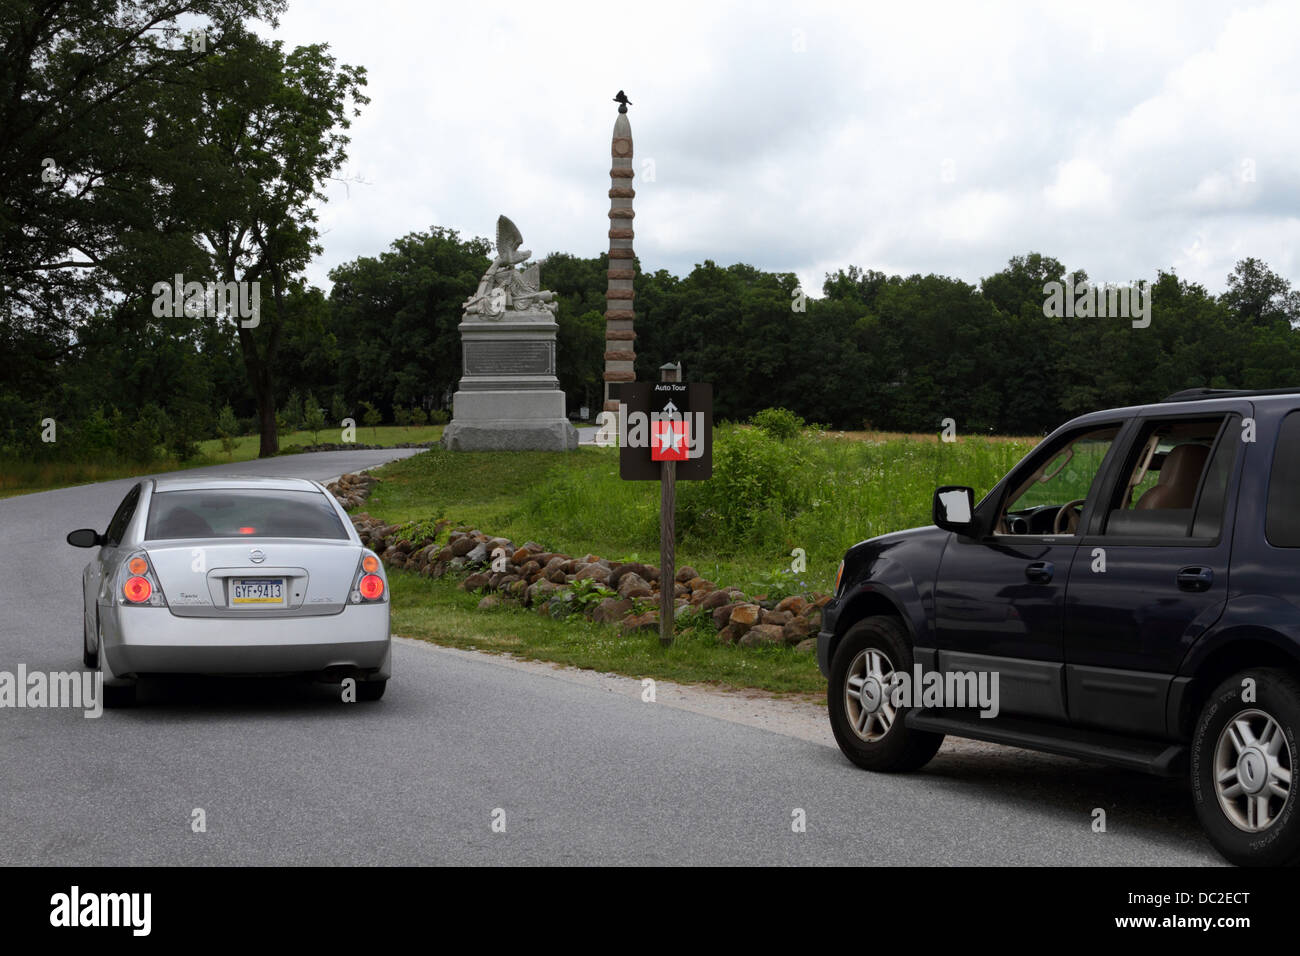 Tour automatique suivant véhicules itinéraire par bataille de Gettysburg, Gettysburg National Military Park, New Jersey, USA Banque D'Images